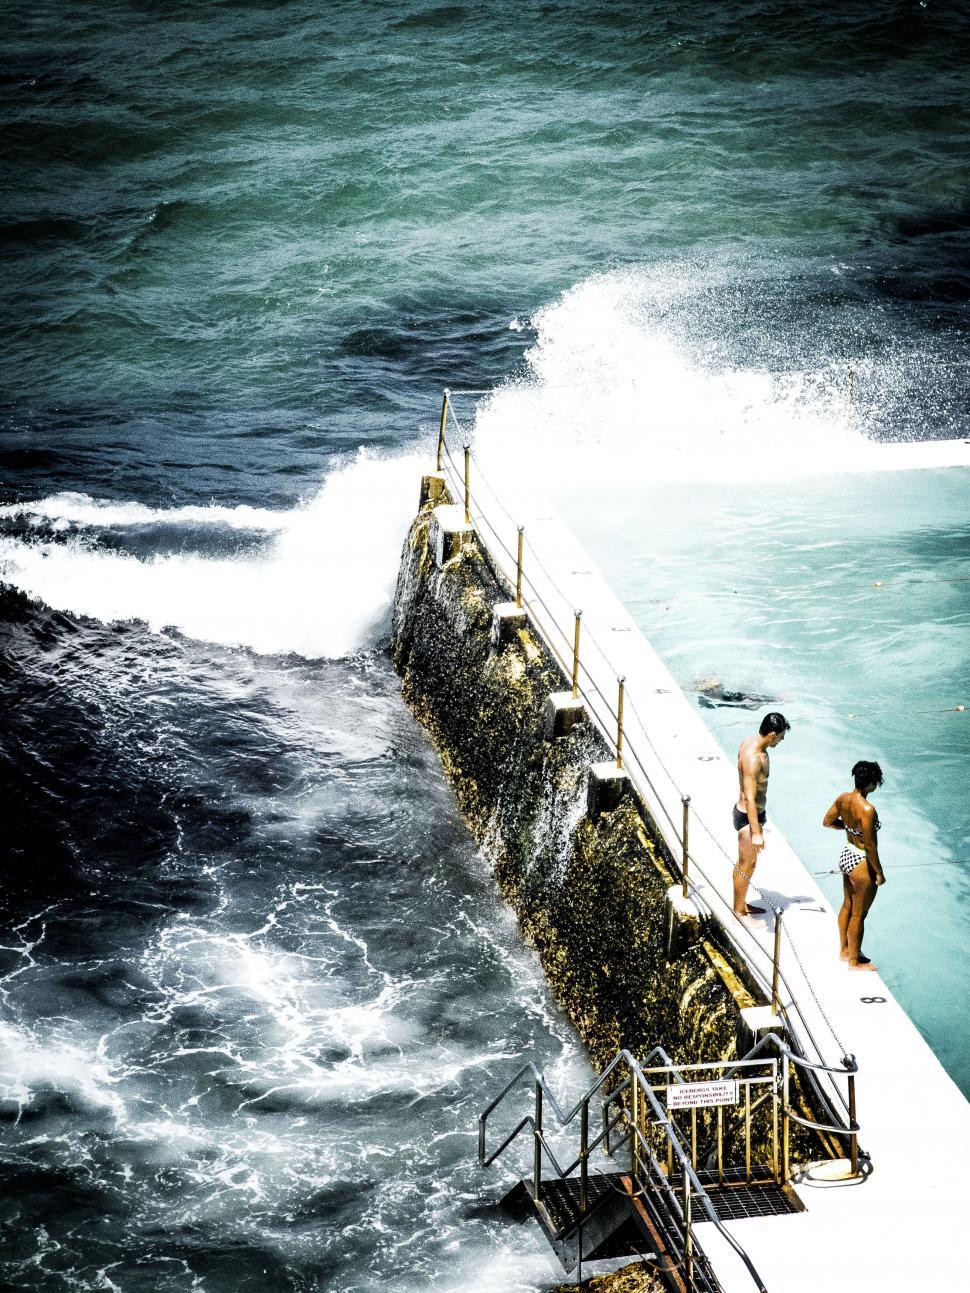 Free Image of Ocean swimming pool with crashing waves 